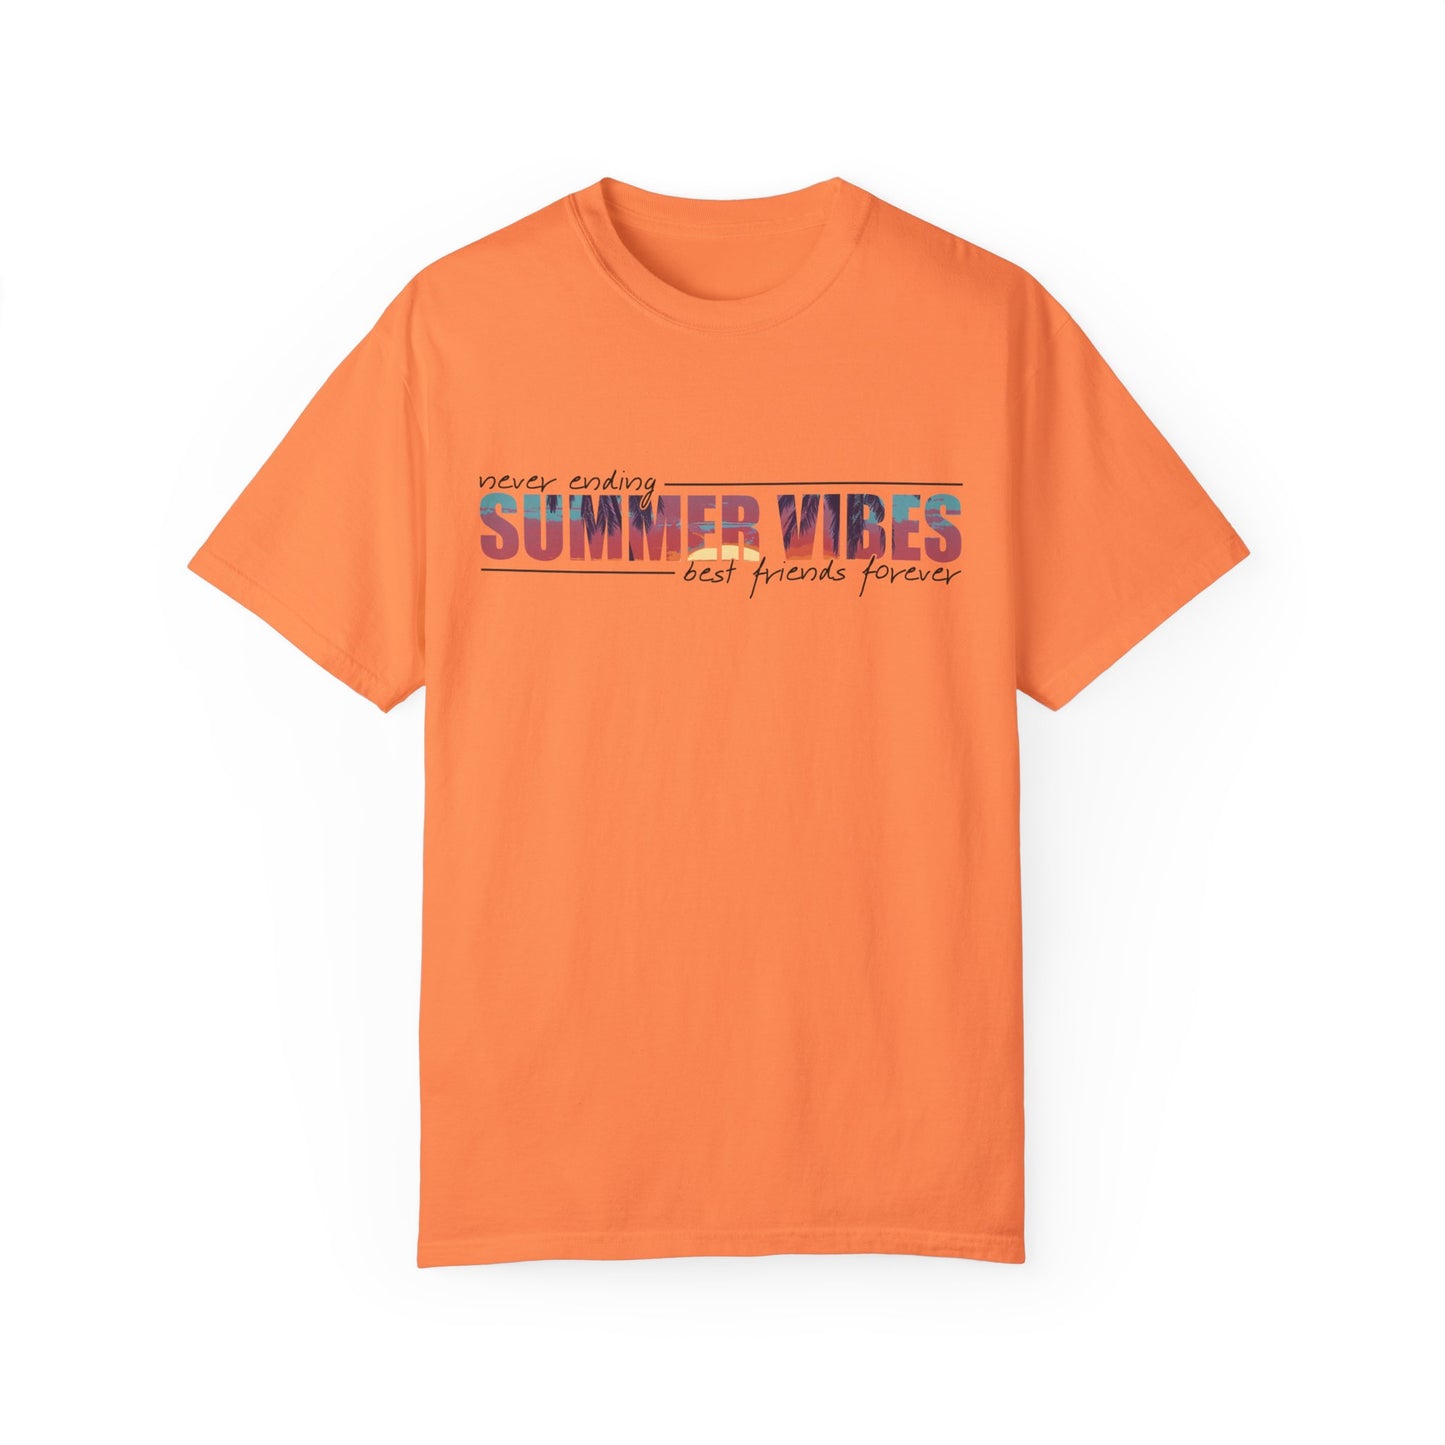 Never Ending Summer Vibes Shirt, Summer Shirt, Best Friends Forever Shirt, Vacation T-Shirt, Beach T Shirt, Summer Mom Shirt, Holiday Shirt